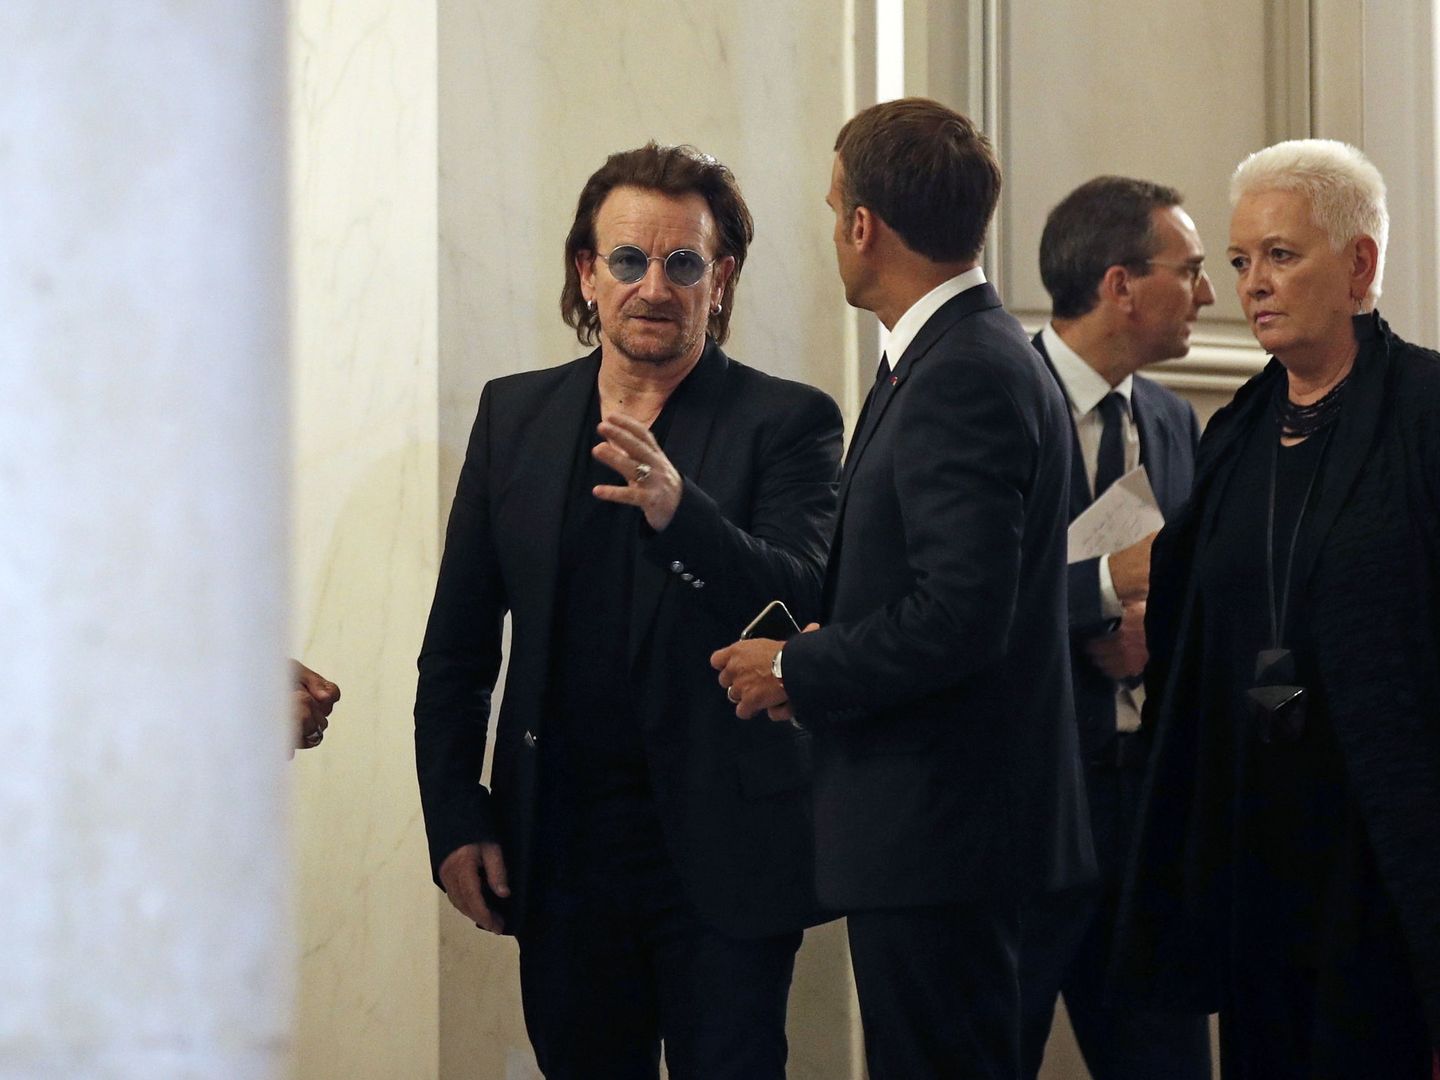 Macron habla con Bono durante una reunión en el Palacio del Elíseo en París, Francia, el 10 de septiembre de 2018 (EFE)